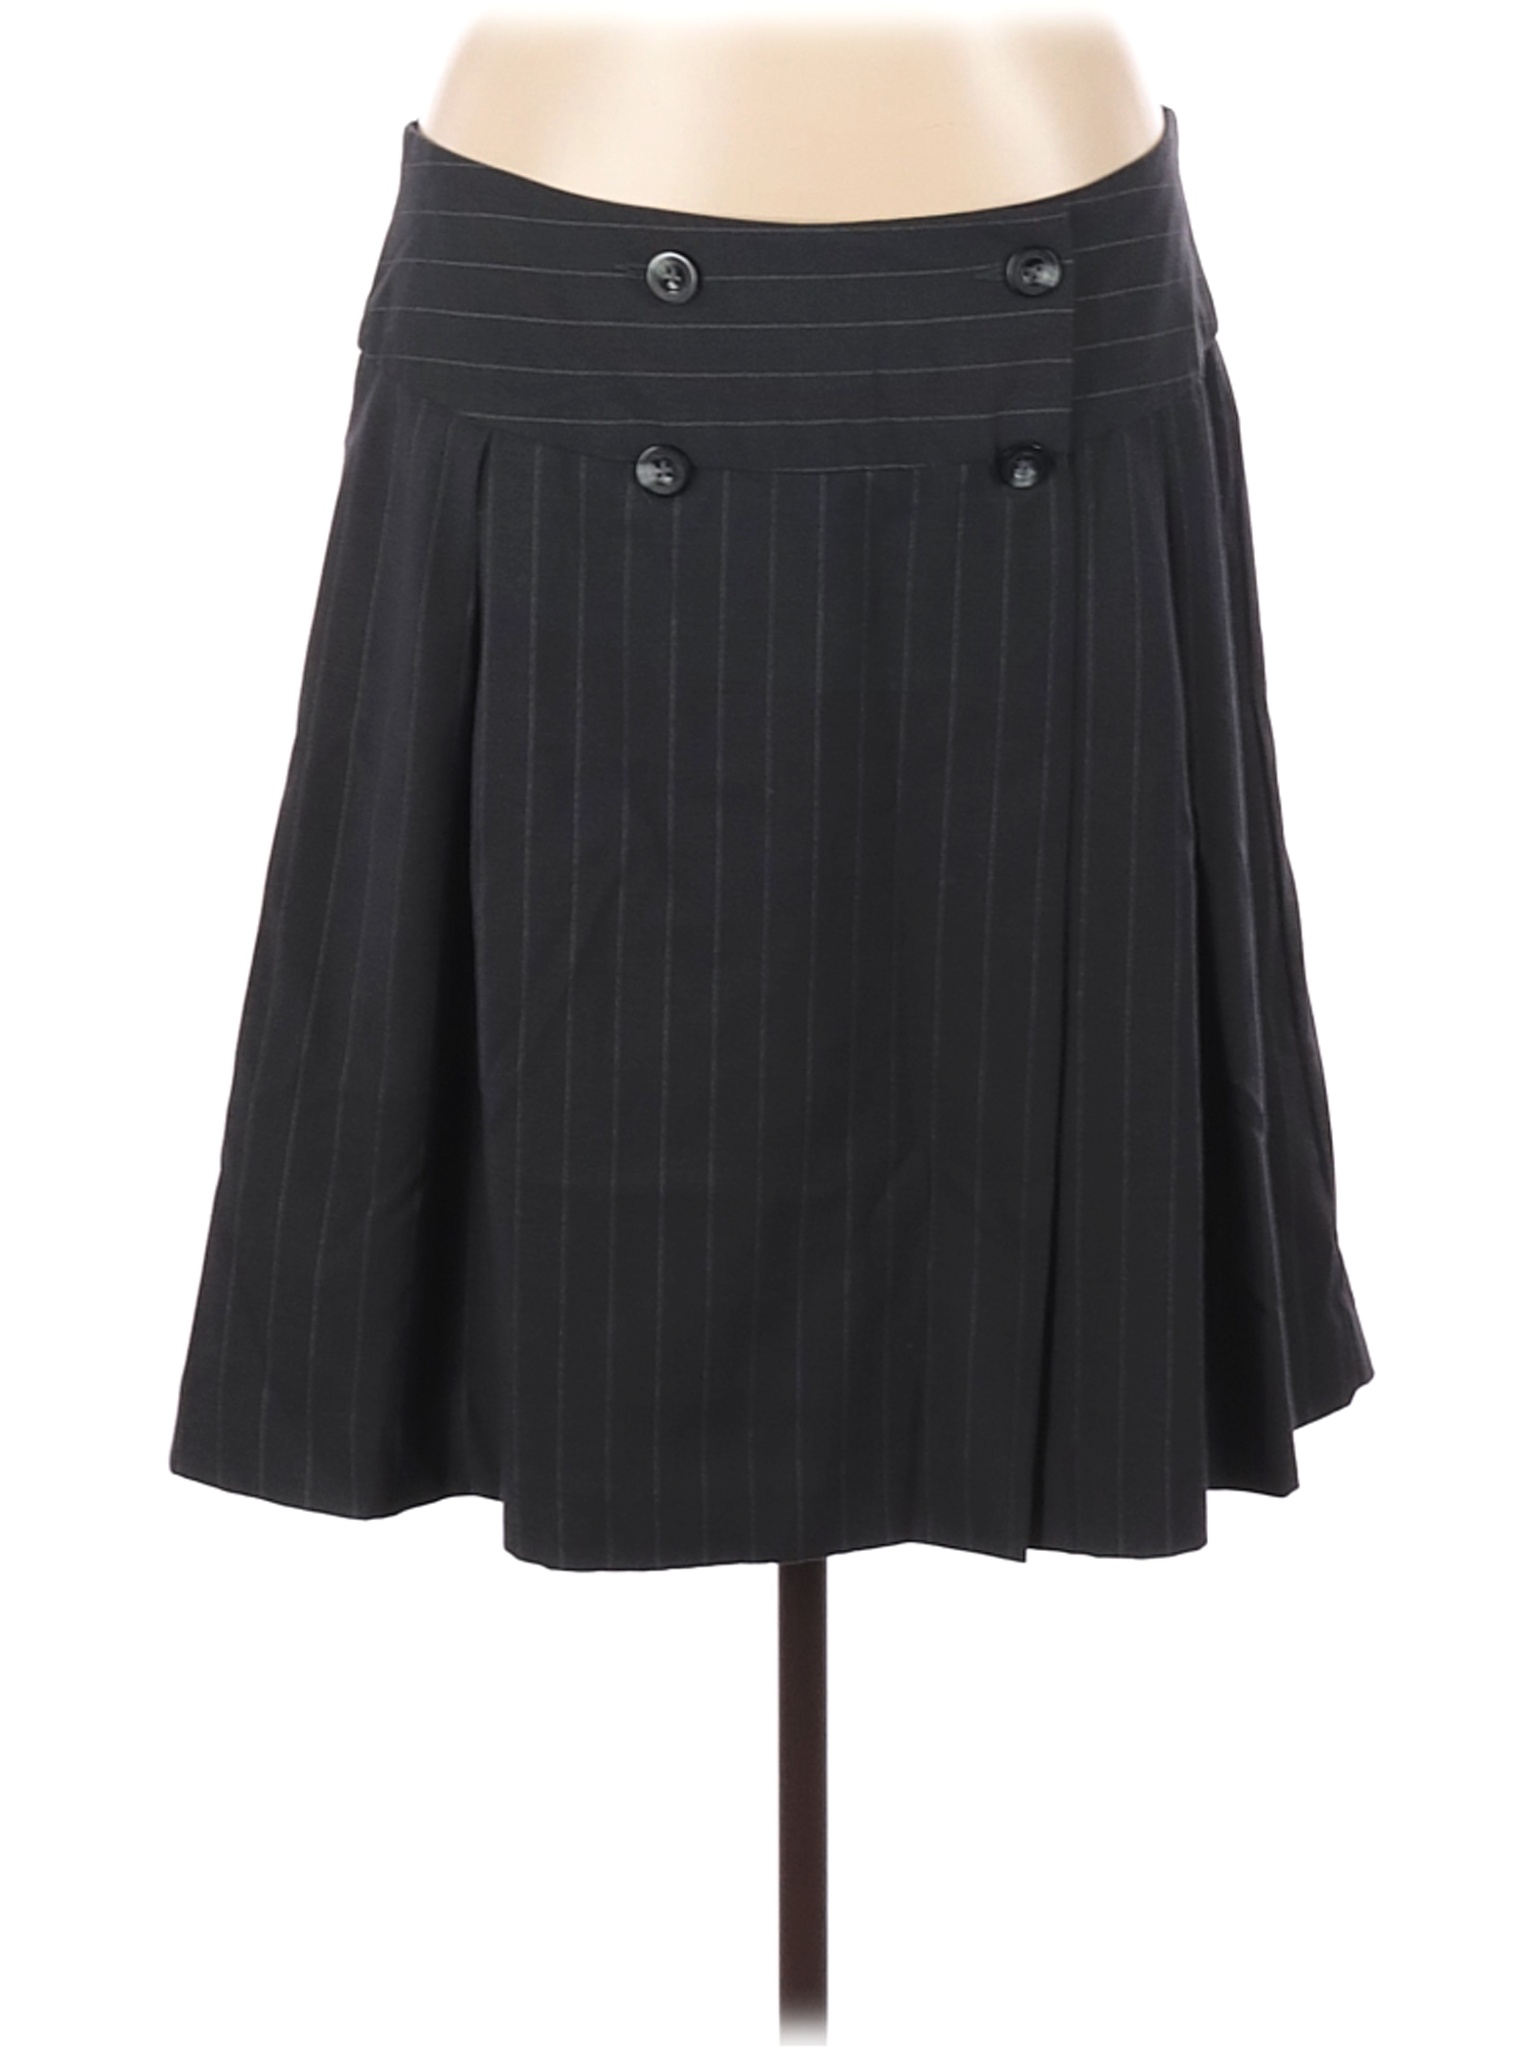 Gap Outlet Women Black Casual Skirt 14 | eBay